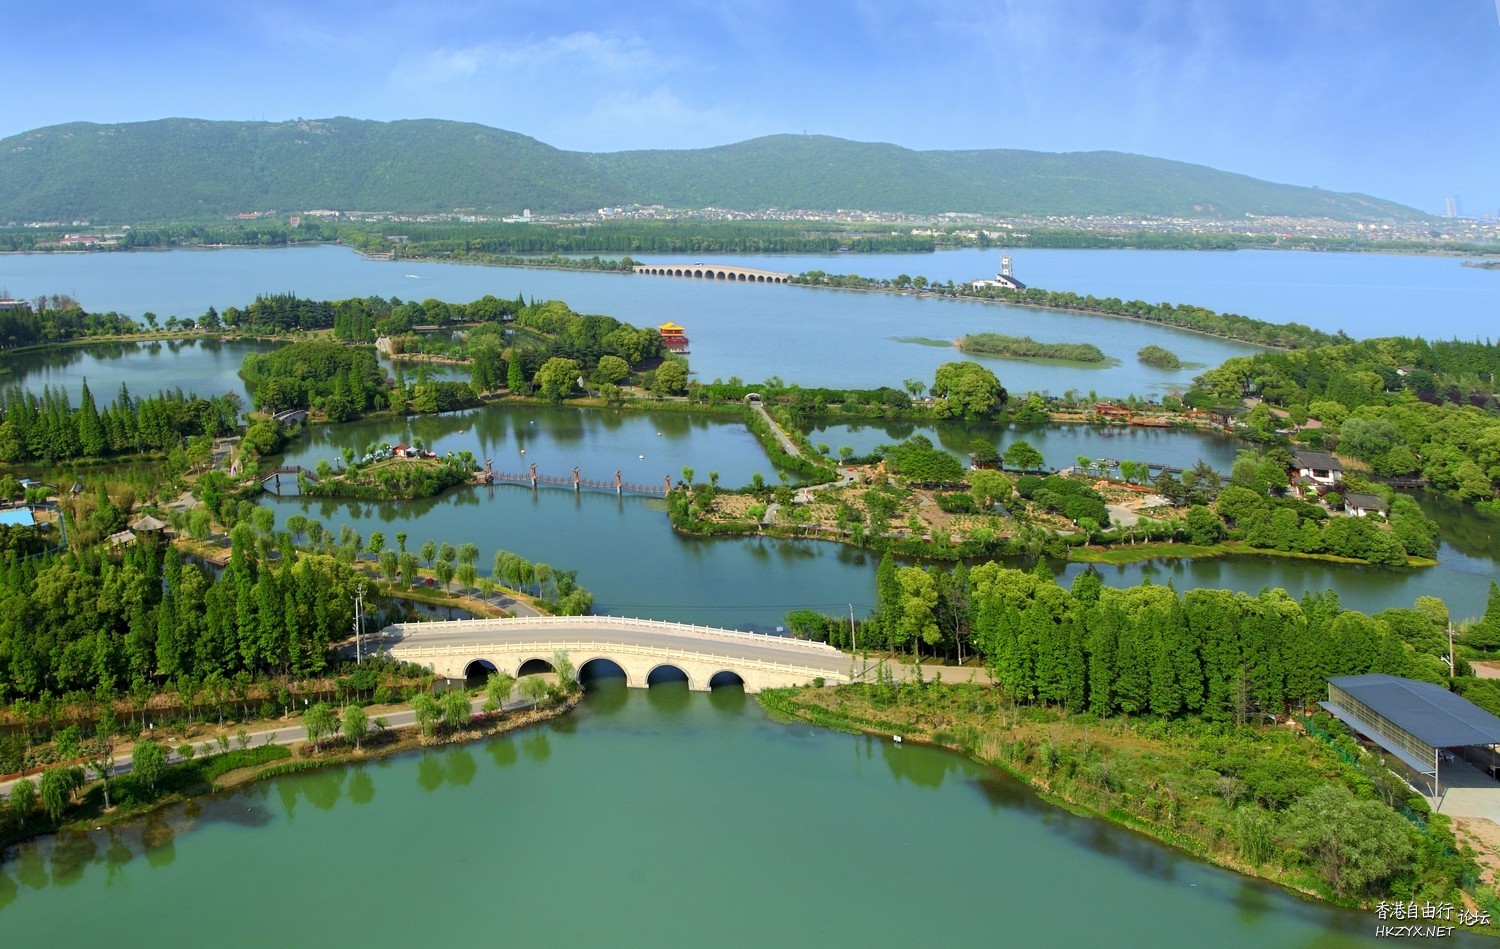 太湖风景遊覽  ChinaTravel 中國觀光景點